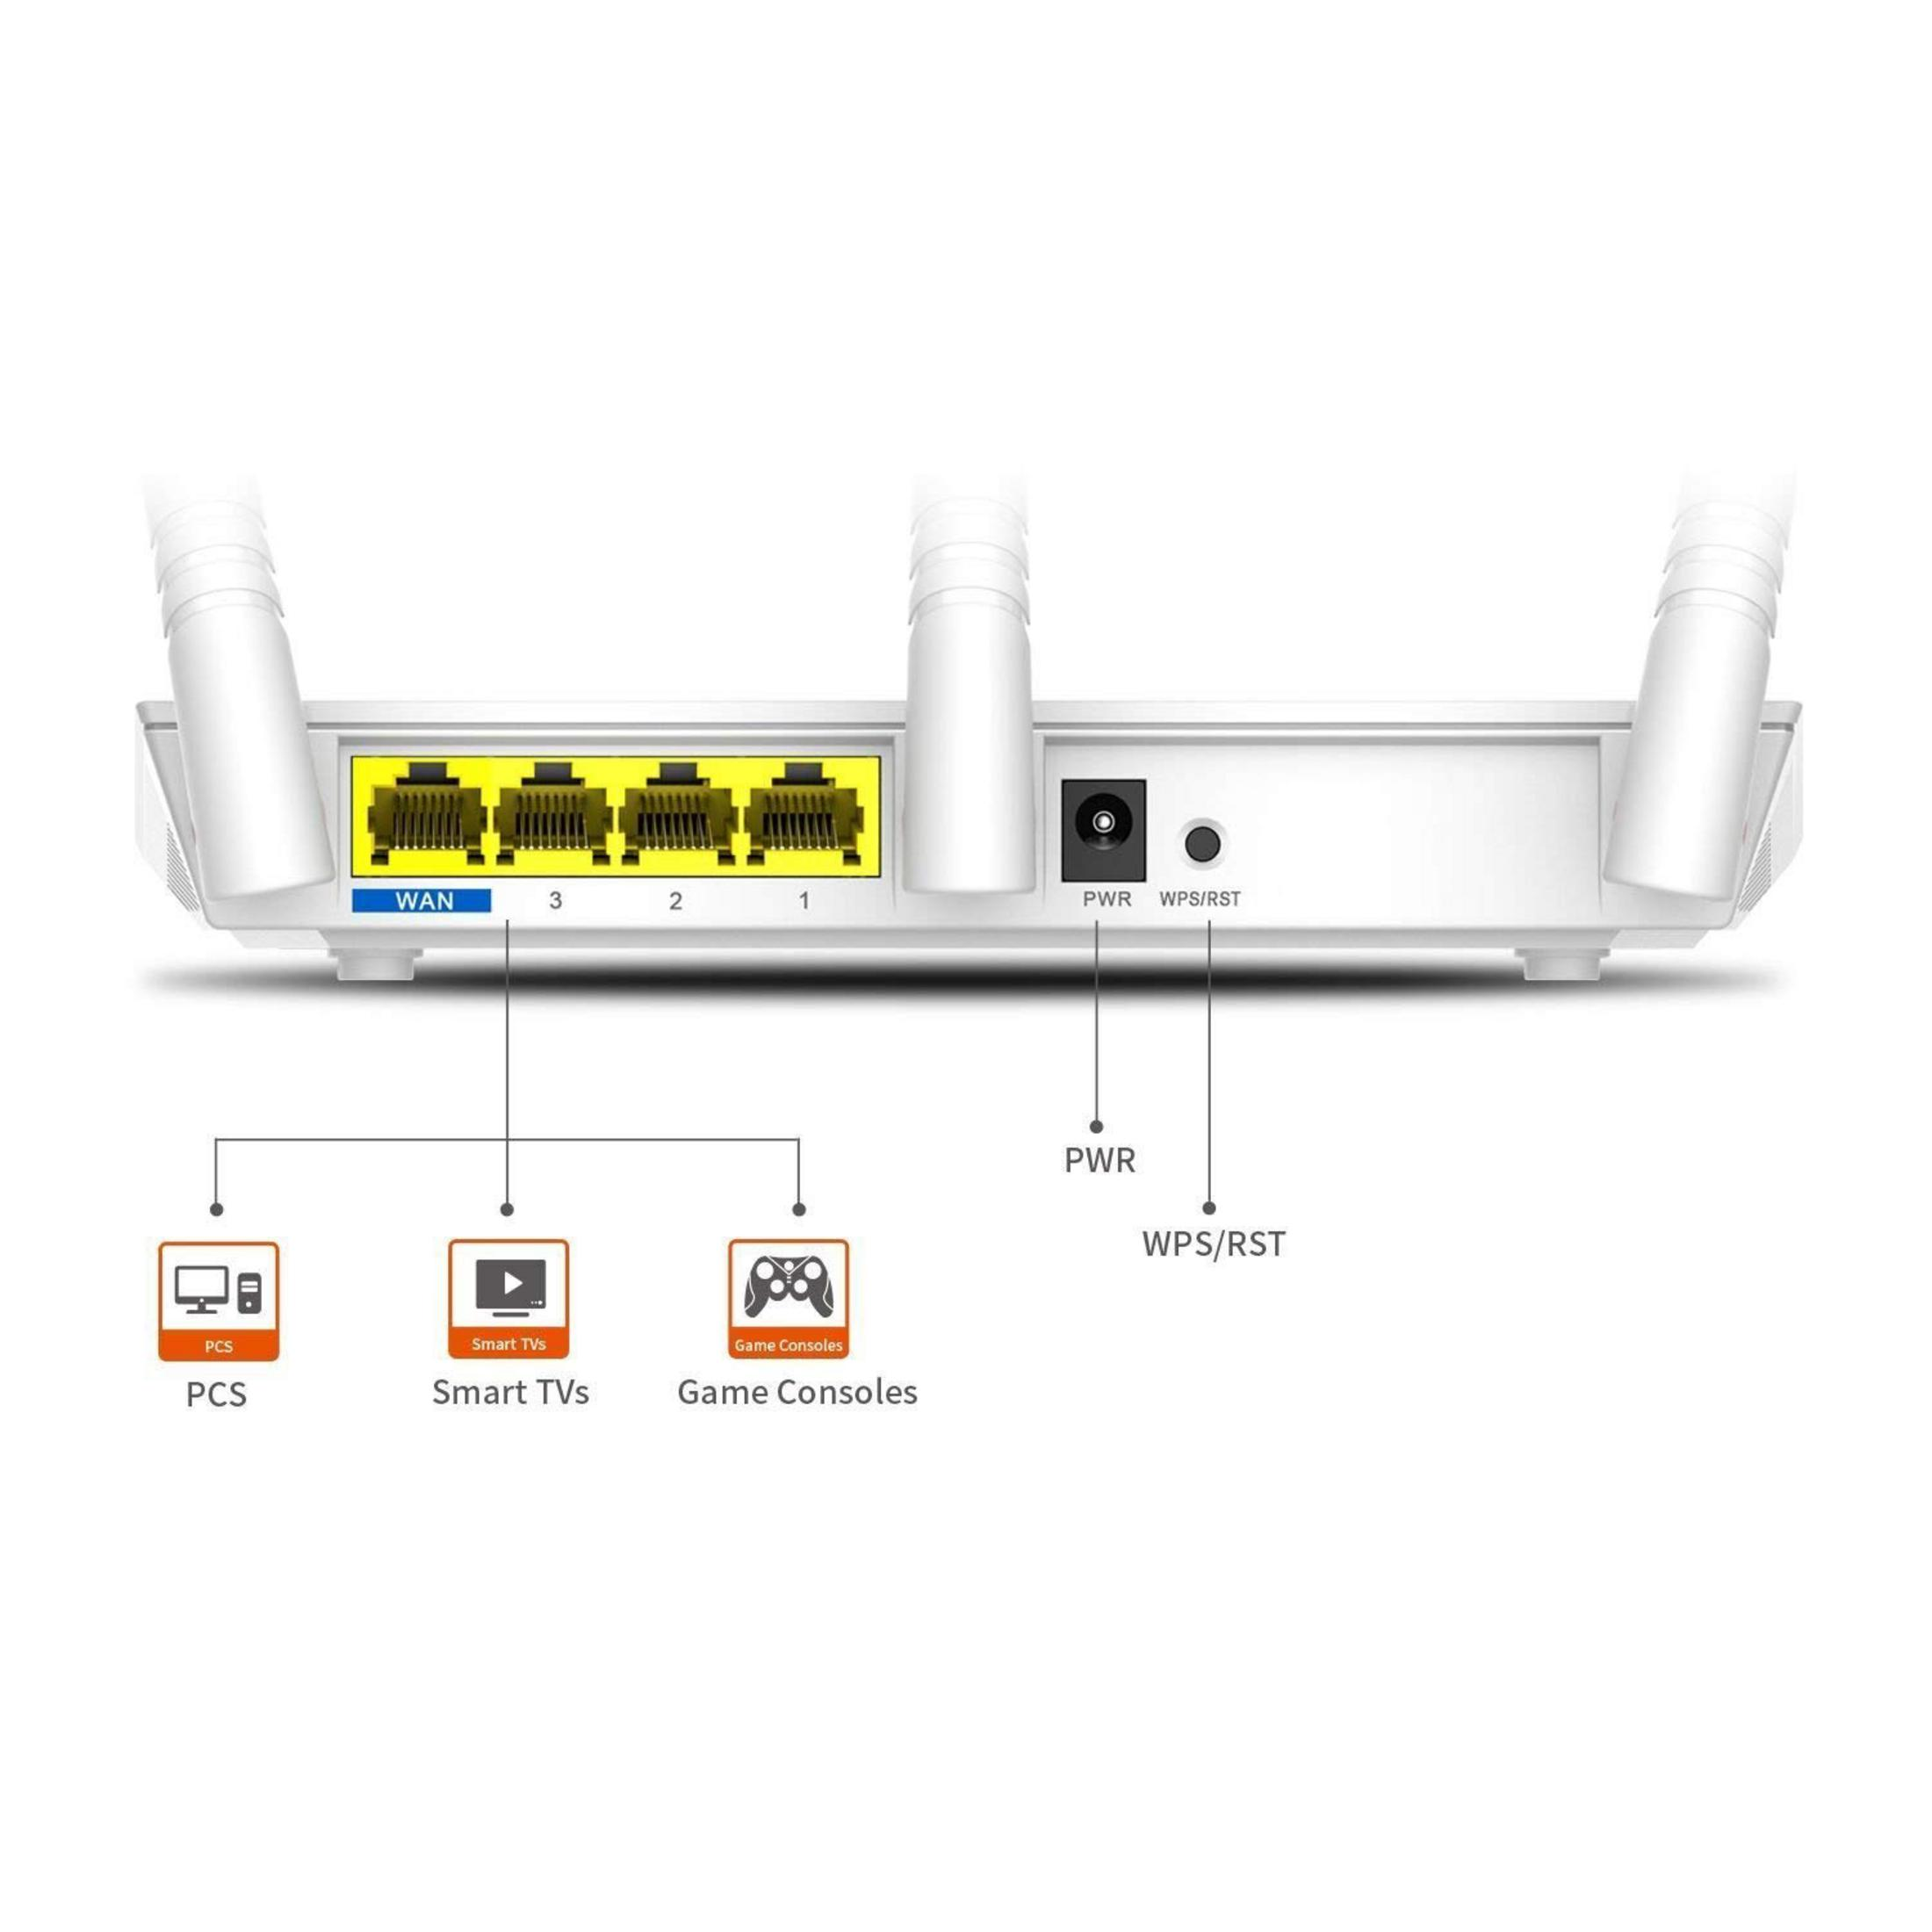 TENDA F3 WLAN ROUTER Router Mbit/s 300MBIT/S 300